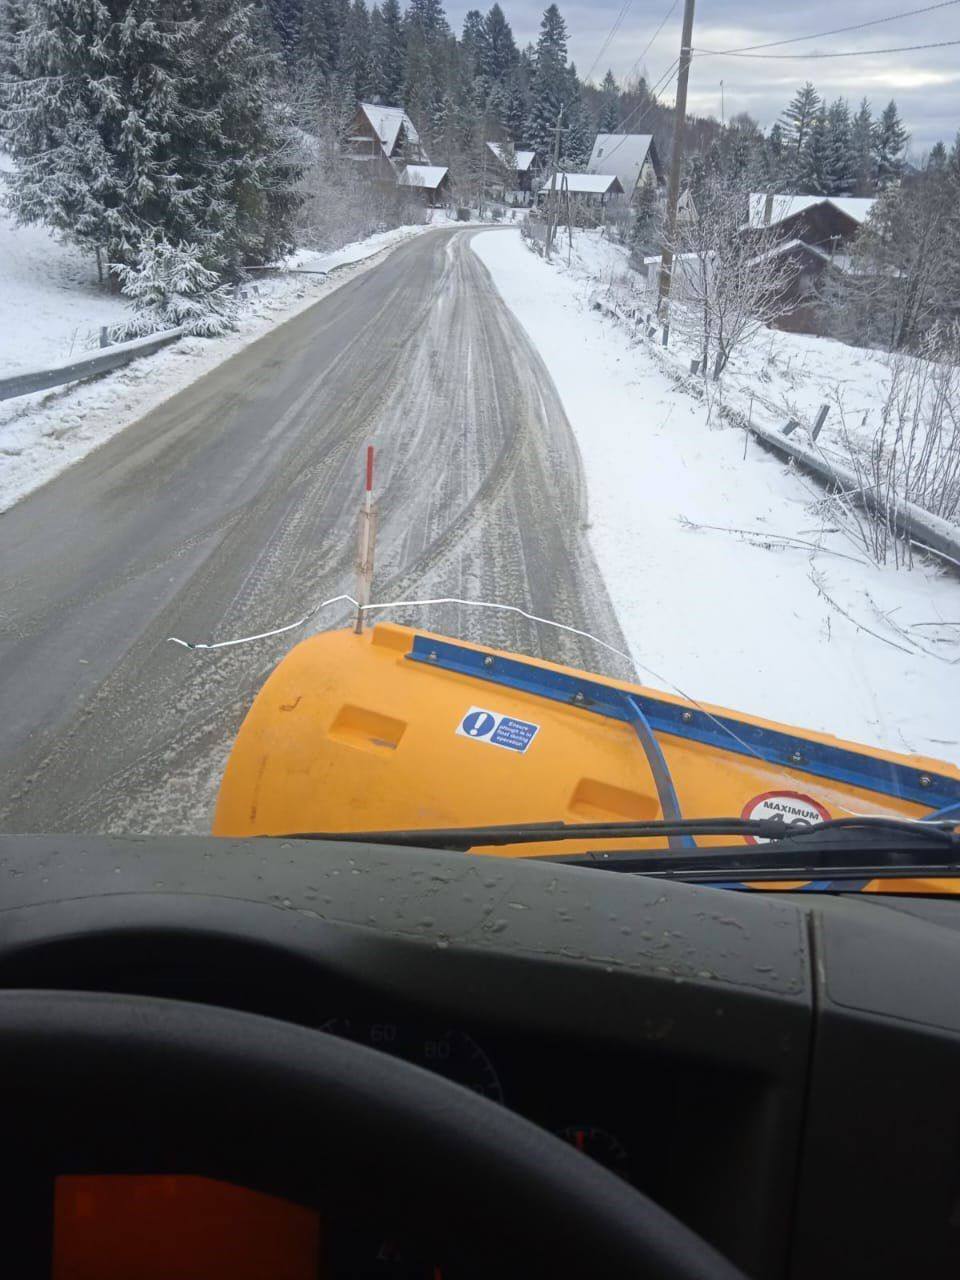 Частину України замело снігом: ситуація на дорогах ускладнена, далі буде гірше. Відео